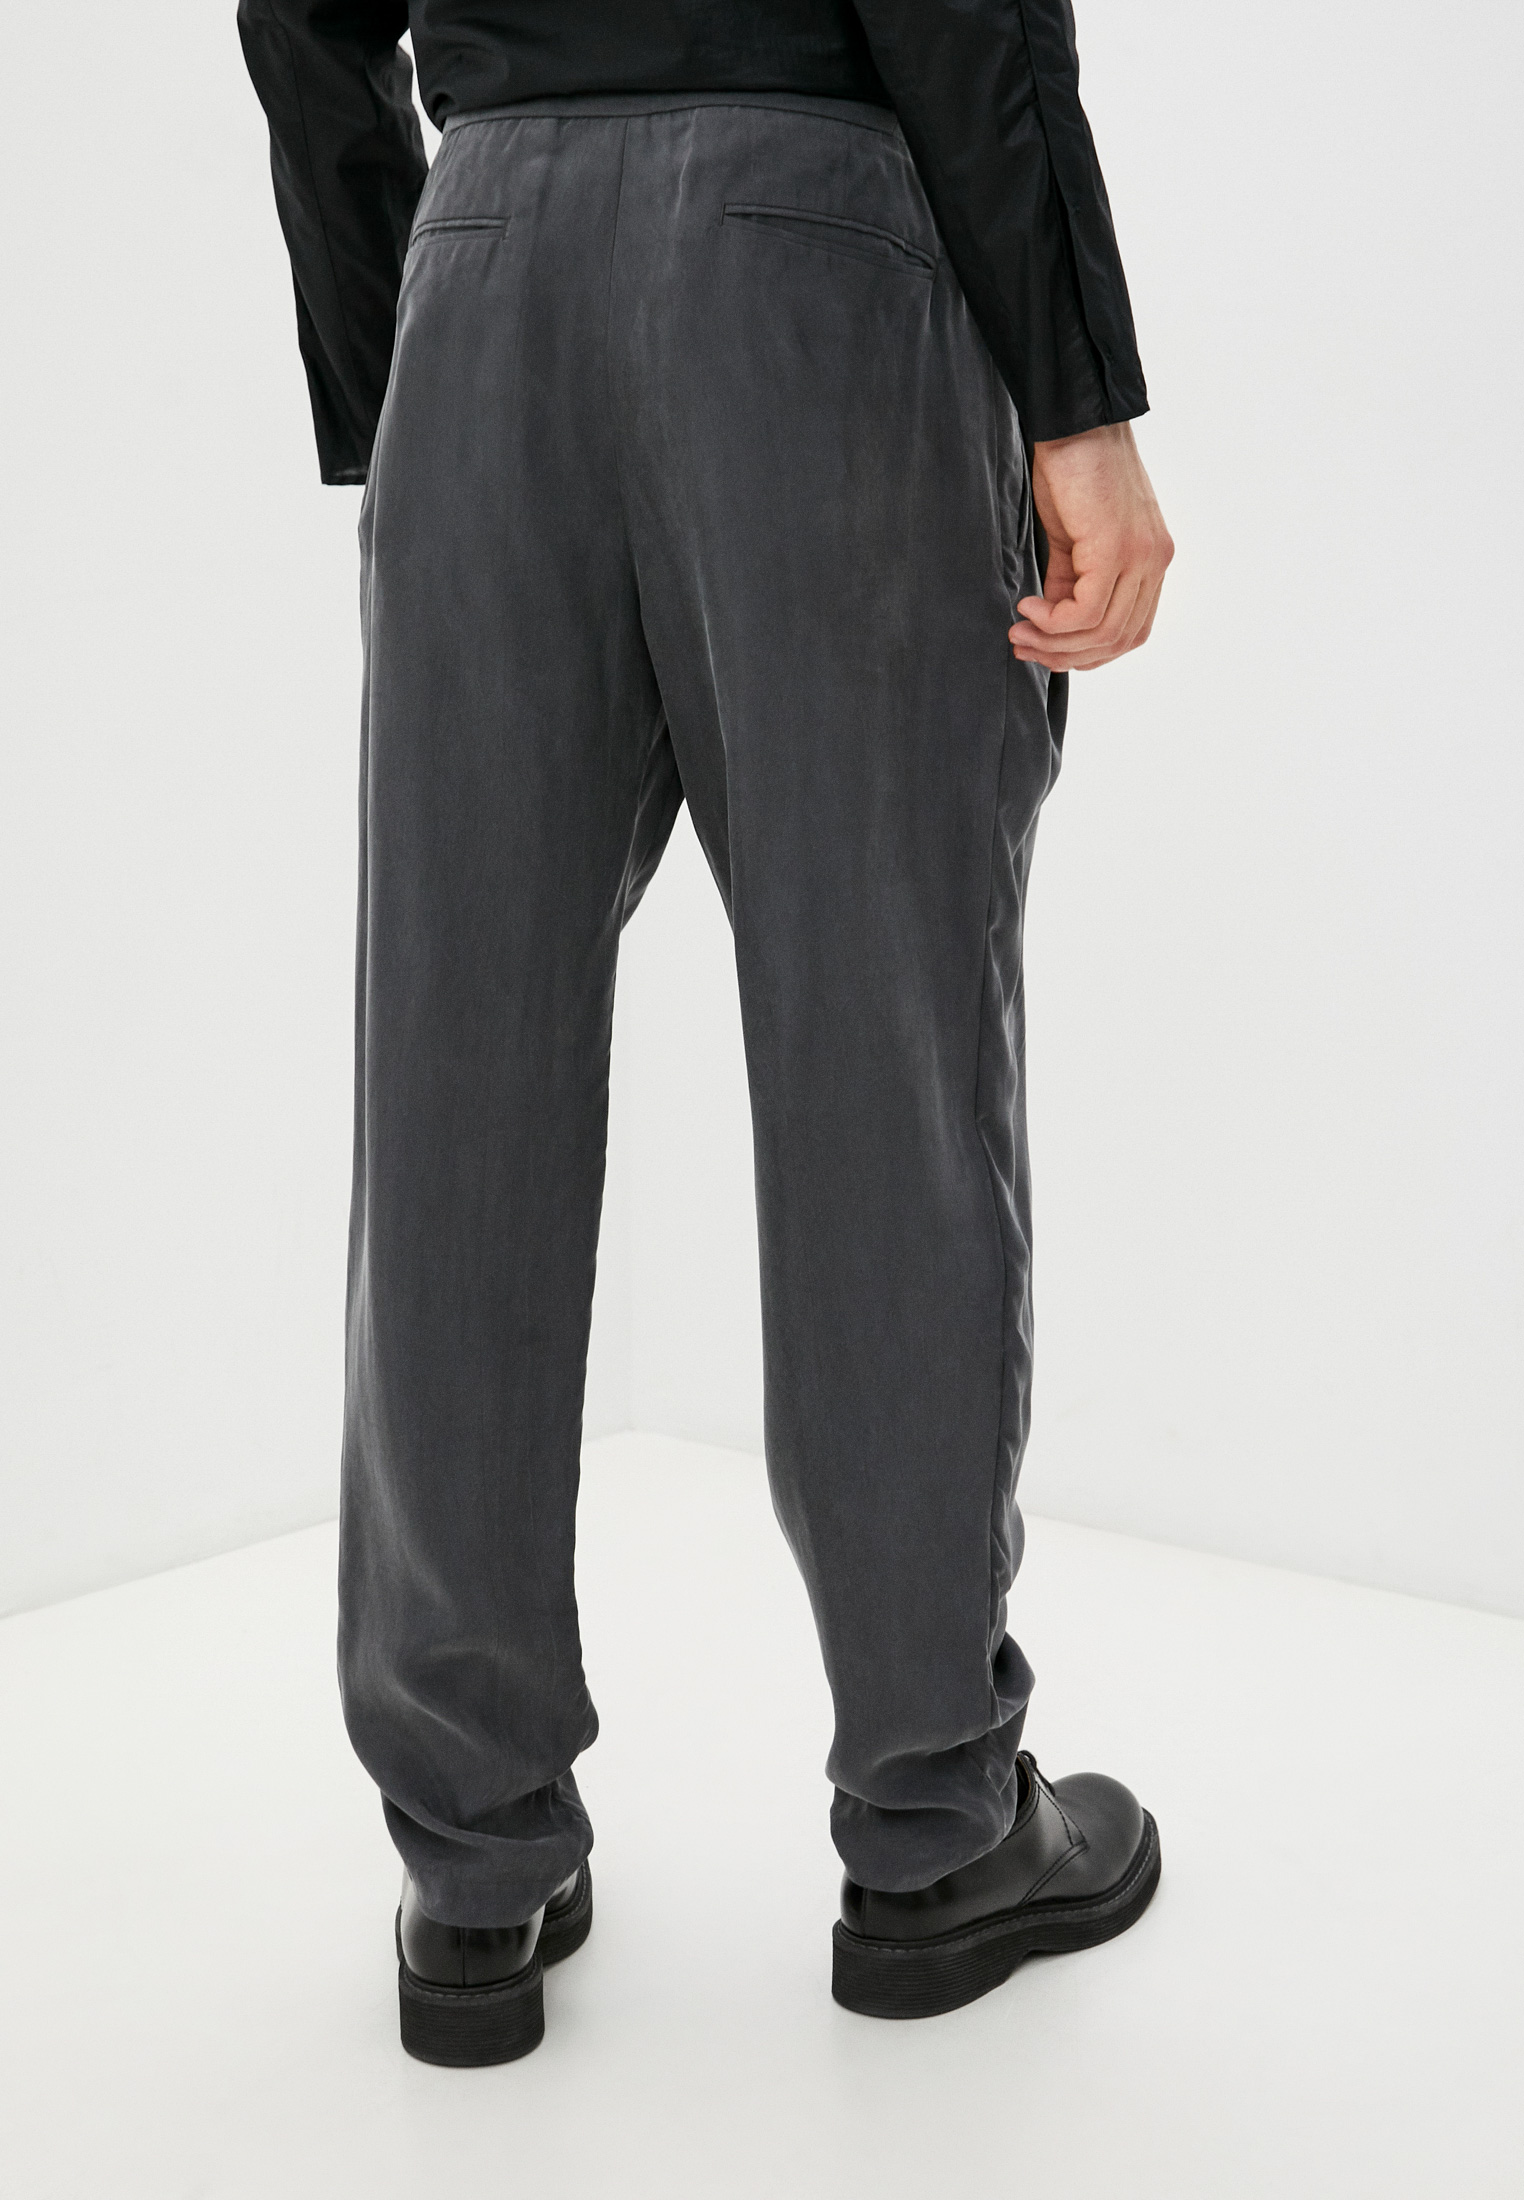 Мужские повседневные брюки Emporio Armani (Эмпорио Армани) W1P290 W1067: изображение 4